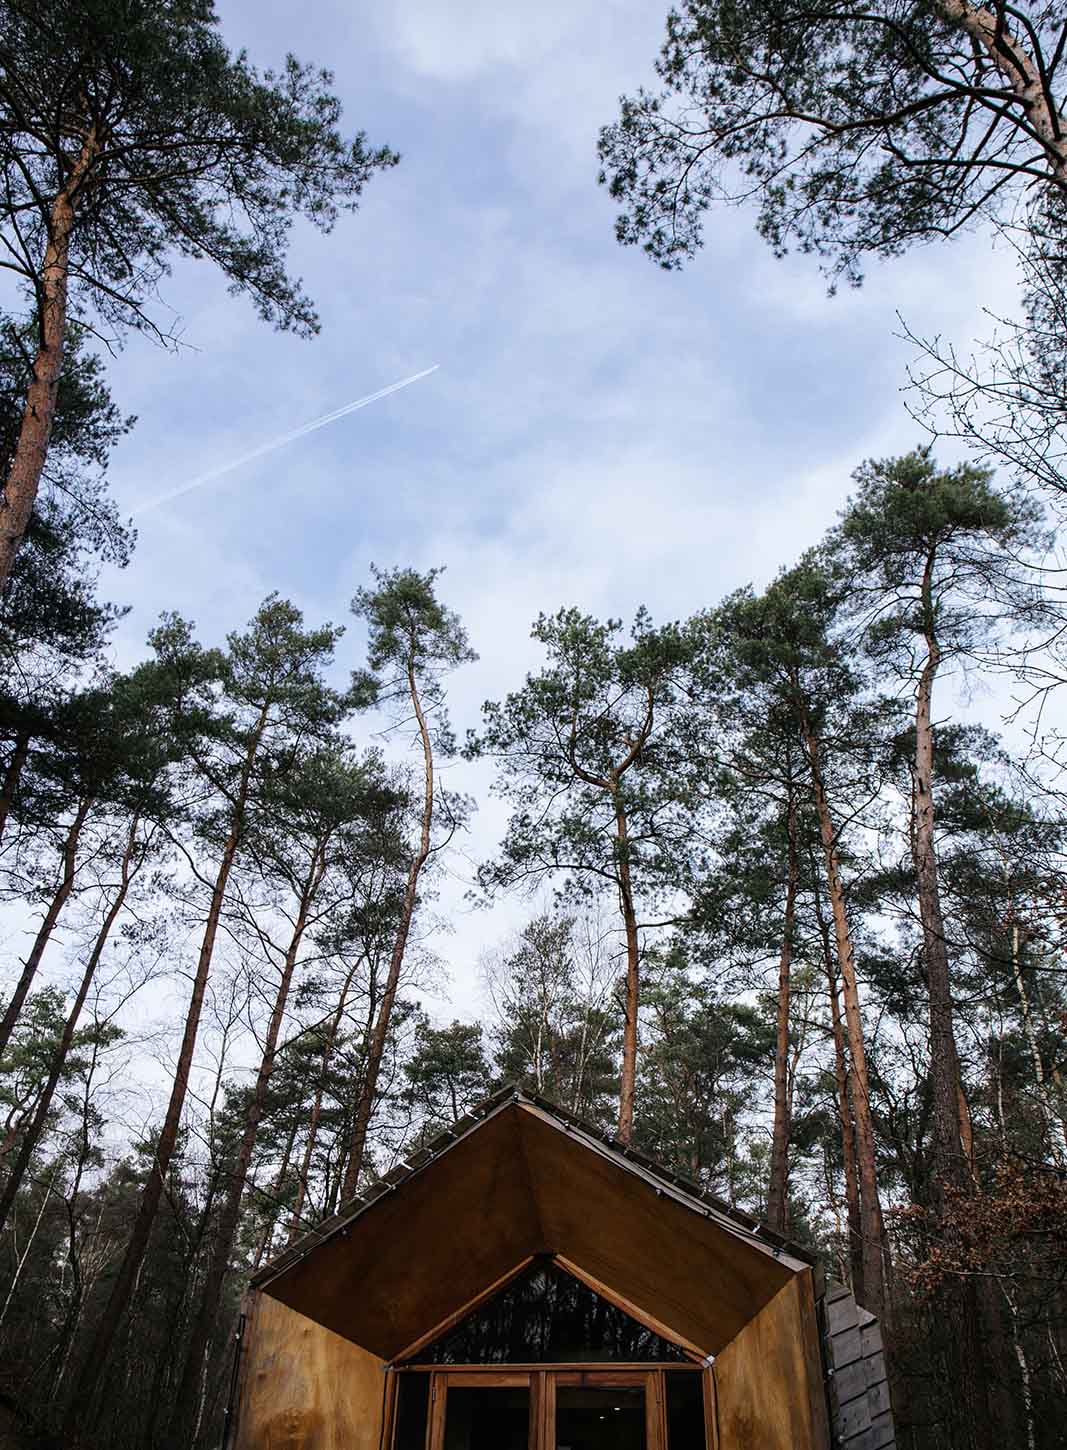 Het dak van een kleine houten cabin is zichtbaar, met daar achter enkele hoge naaldbomen in een bosrijk gebied.